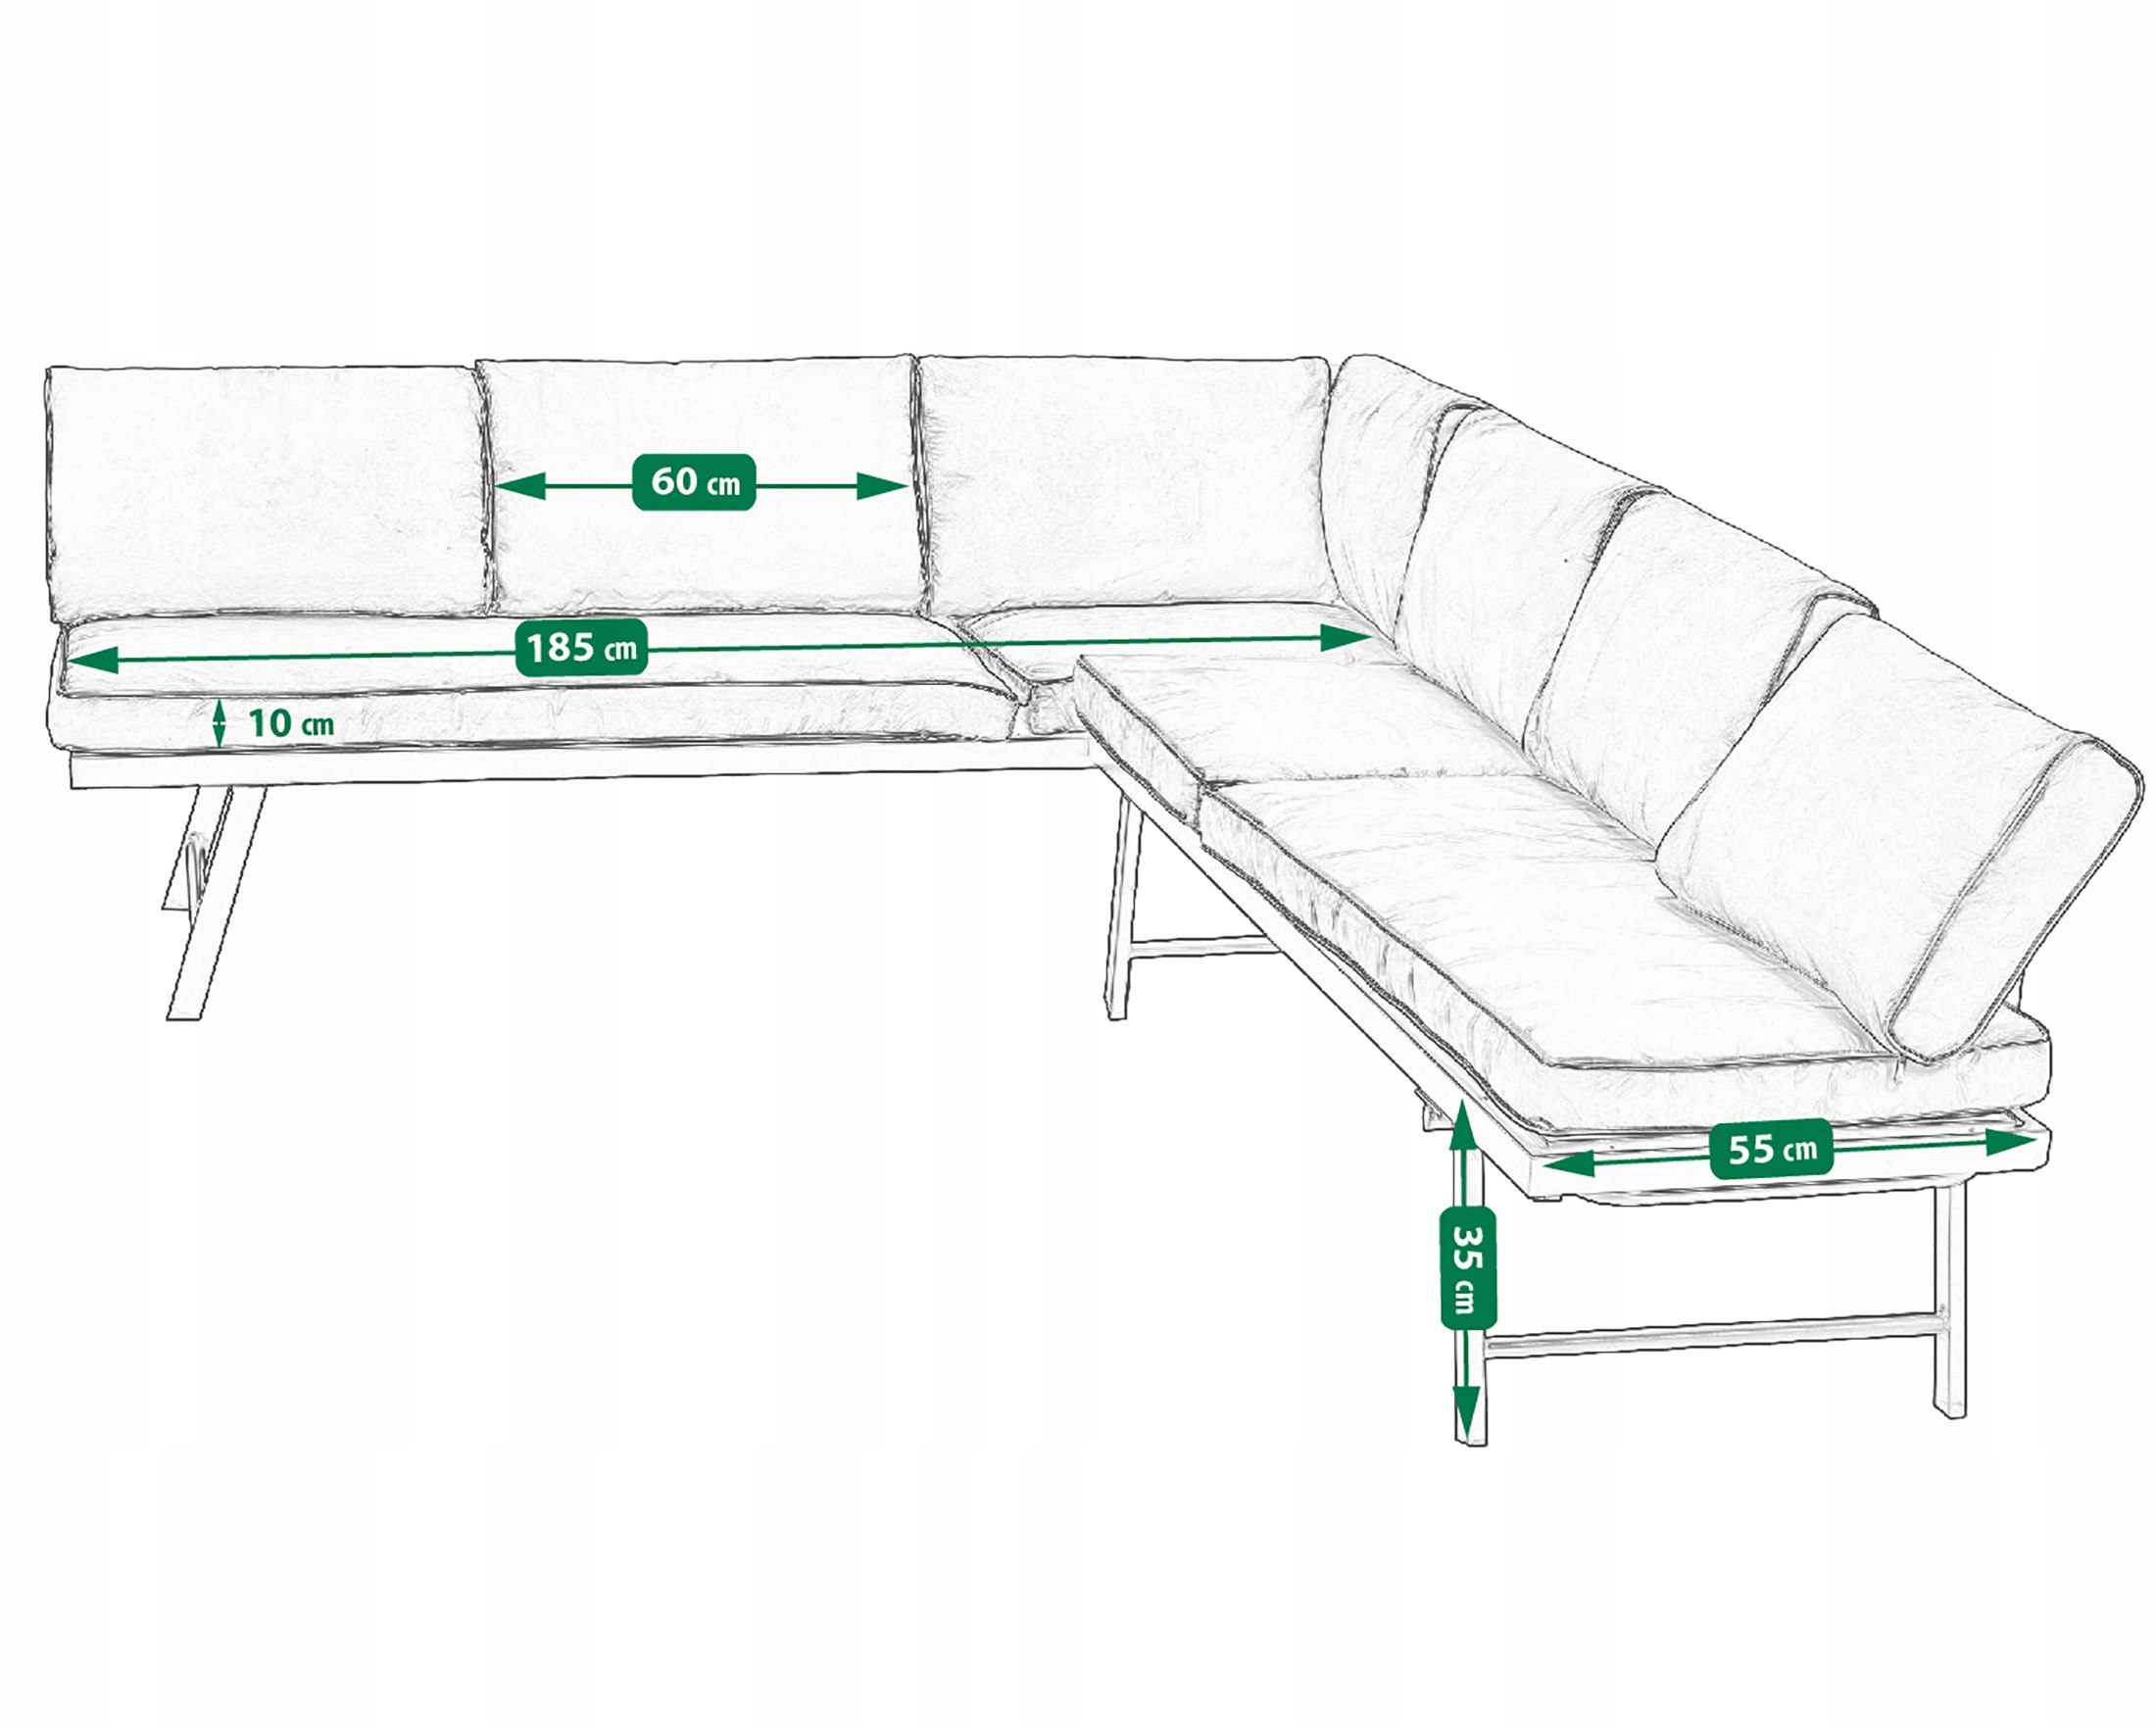 ZESTAW MEBLI OGRODOWYCH narożnik sofa stolik komplet NA OGRÓD TARAS leżanka Liczba elementów w zestawie 2